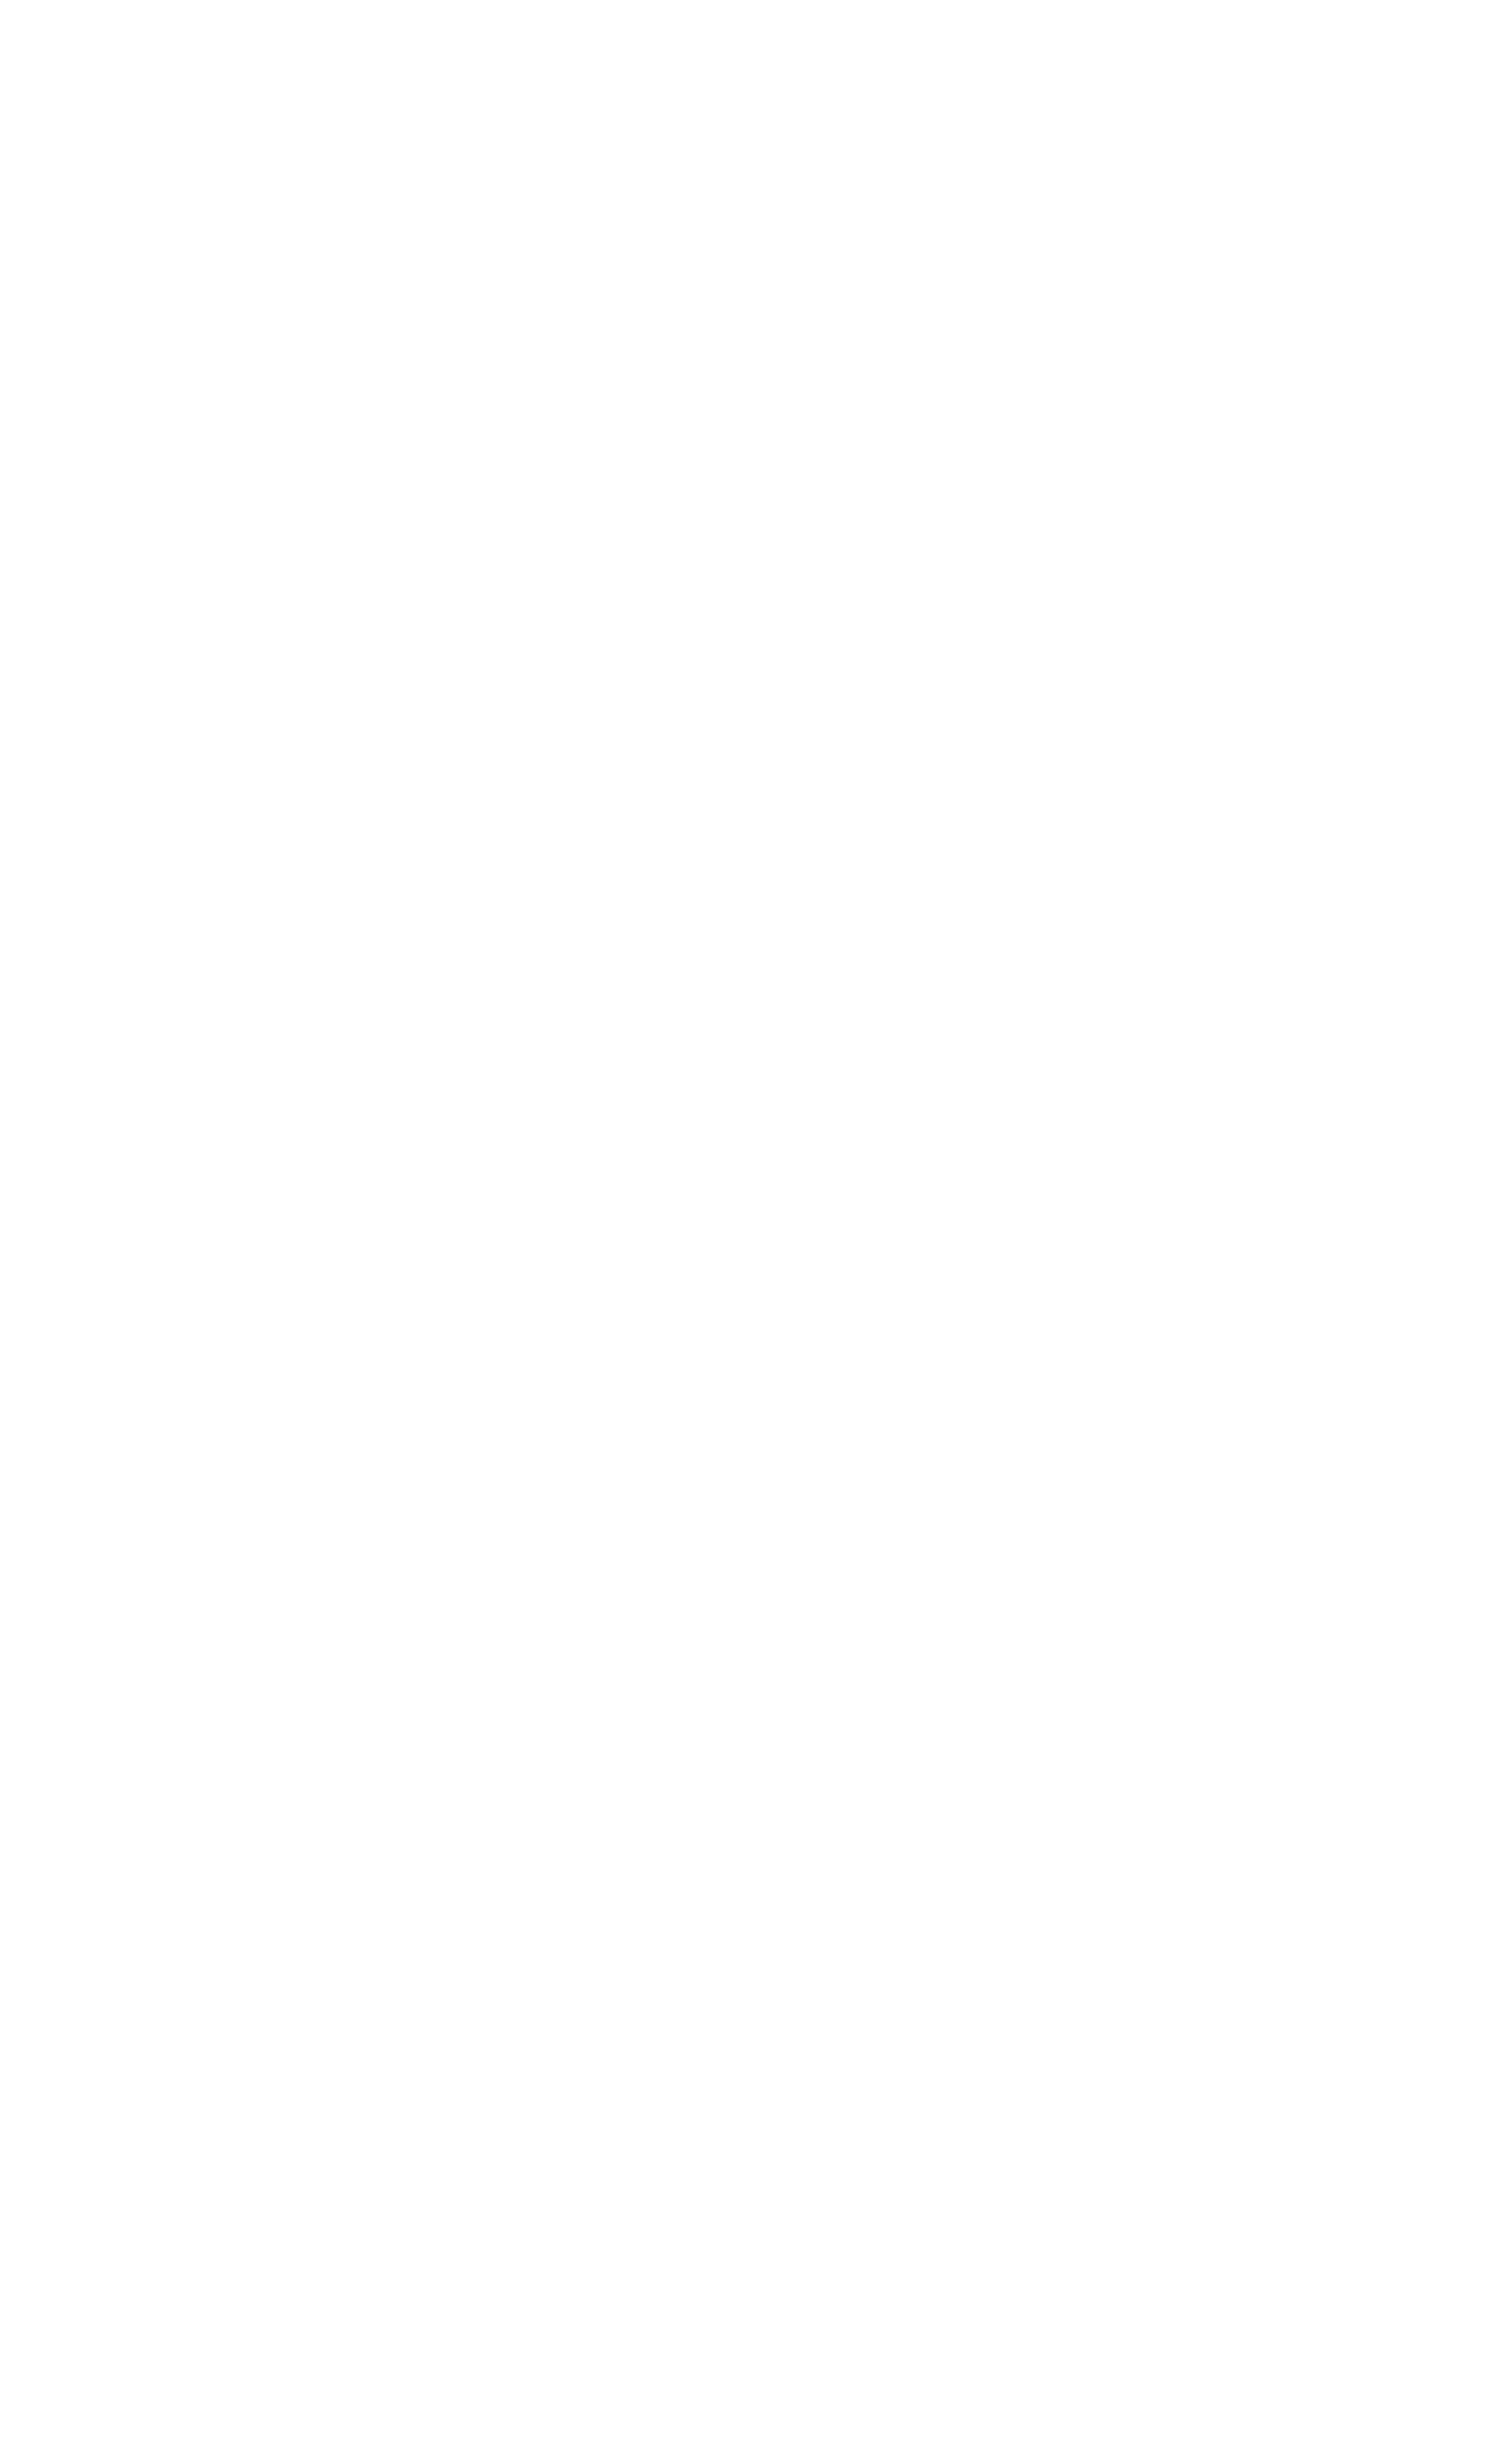 Дмитрий Гутов. Нанайская девушка в наряде невесты. До 1973. Музей изобразительных искусств г. Комсомольск-на-Амуре, Комсомольск-на-Амуре